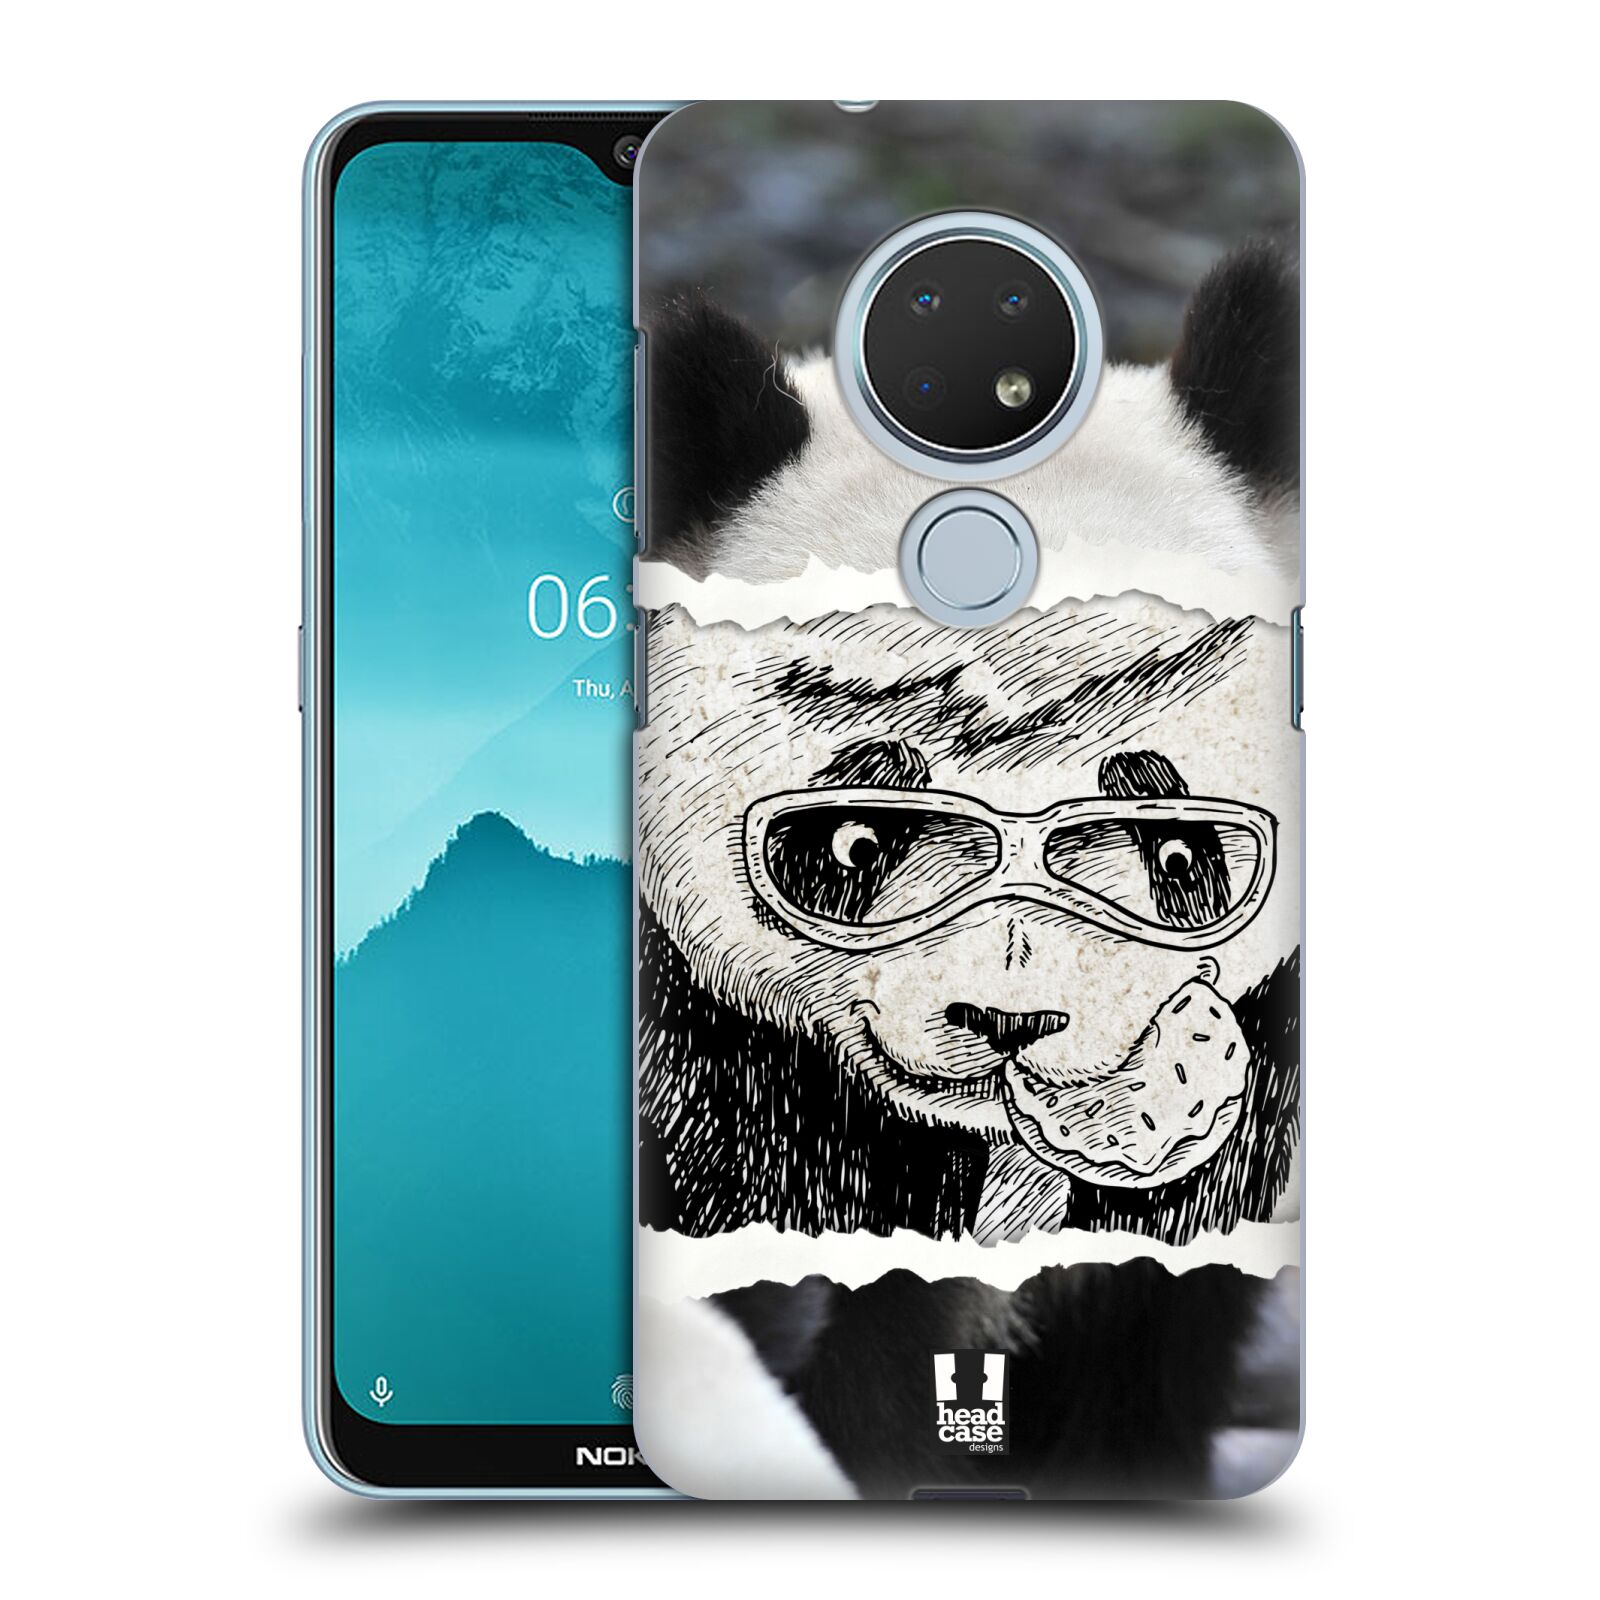 Pouzdro na mobil Nokia 6.2 - HEAD CASE - vzor zvířata koláž roztomilá panda